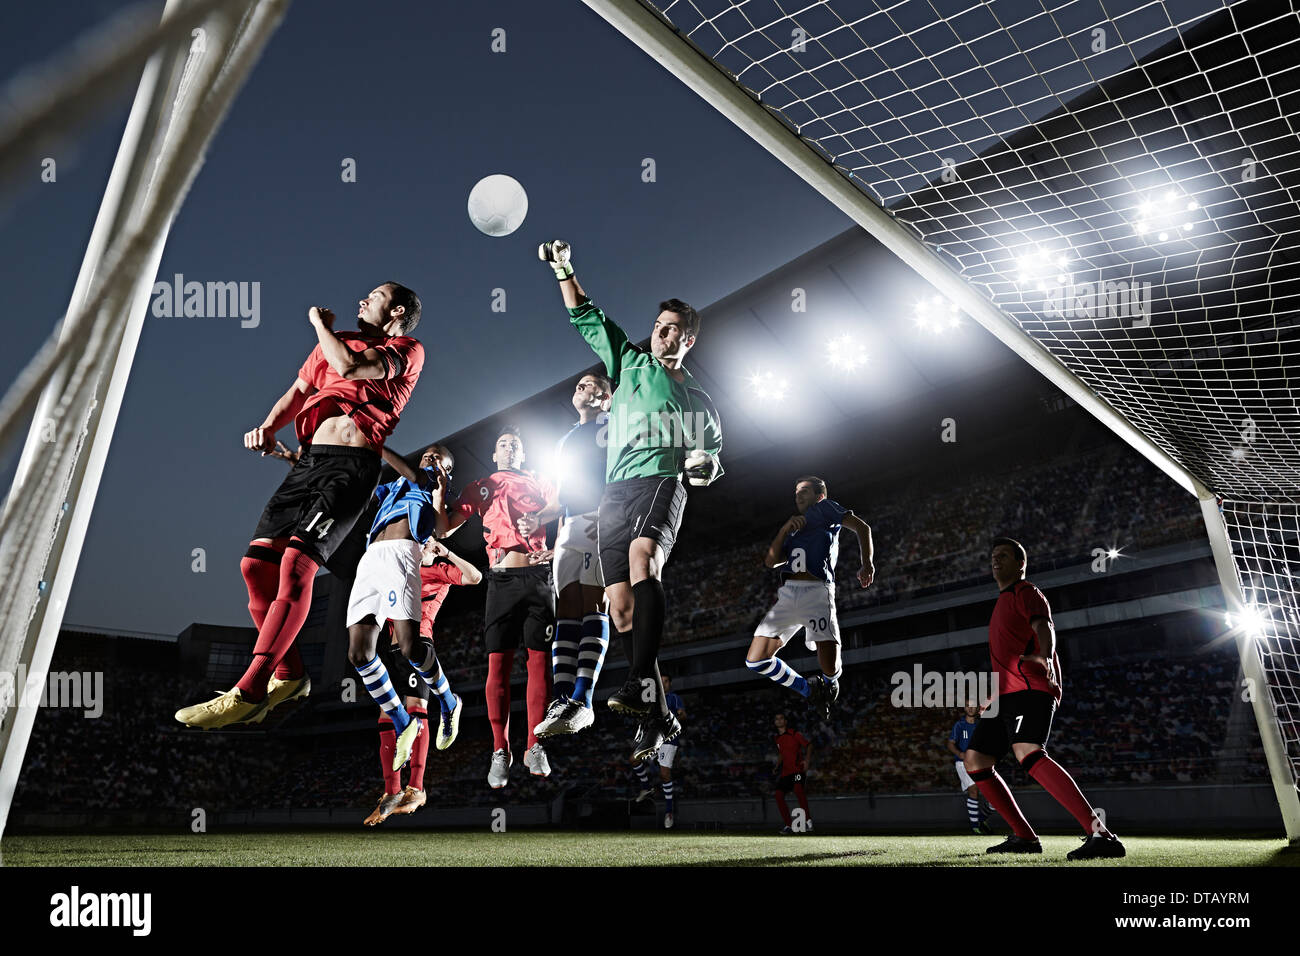 Jugadores de fútbol defendiendo objetivo Foto de stock